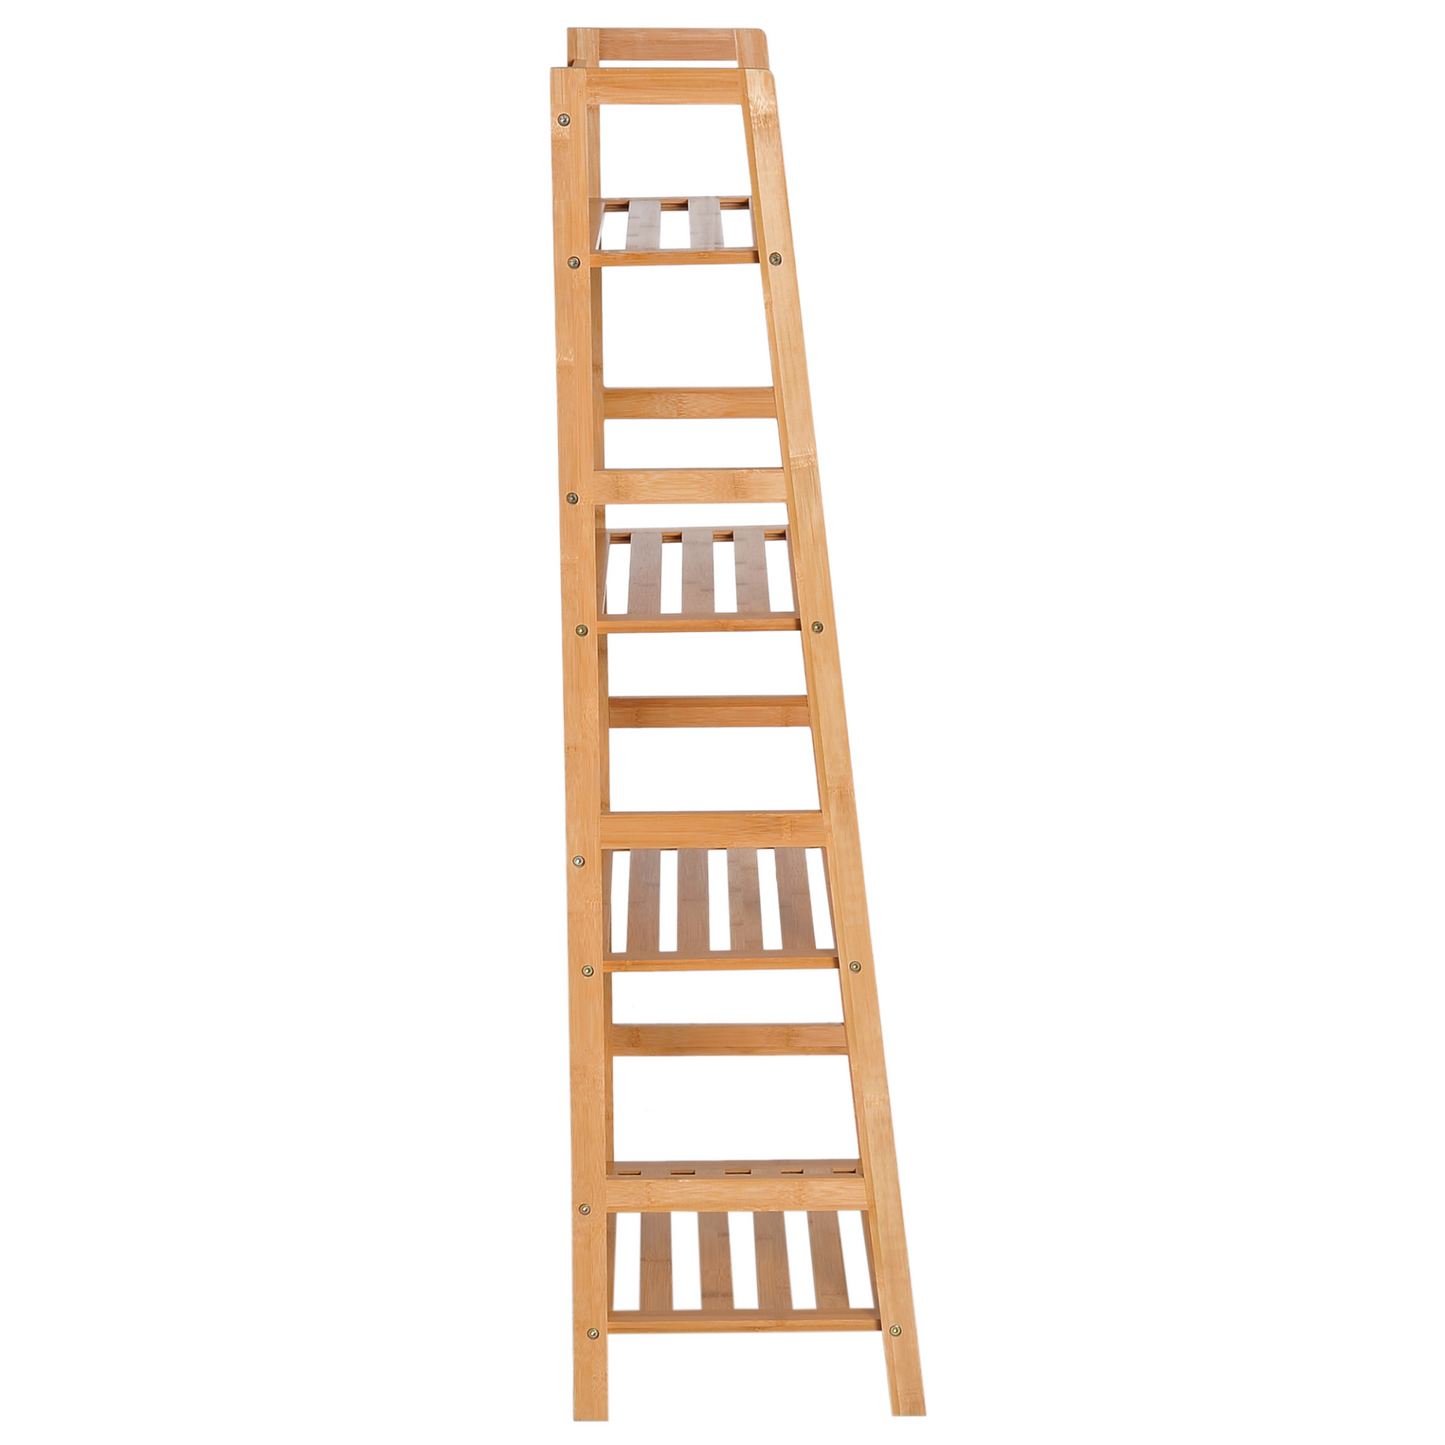 HOMCOM Bookshelf Unit Shelving 4 Tiers, Ladder Shelf, DIY Plant Shelving Stand, 48cmx31.5cmx120cm, Bamboo